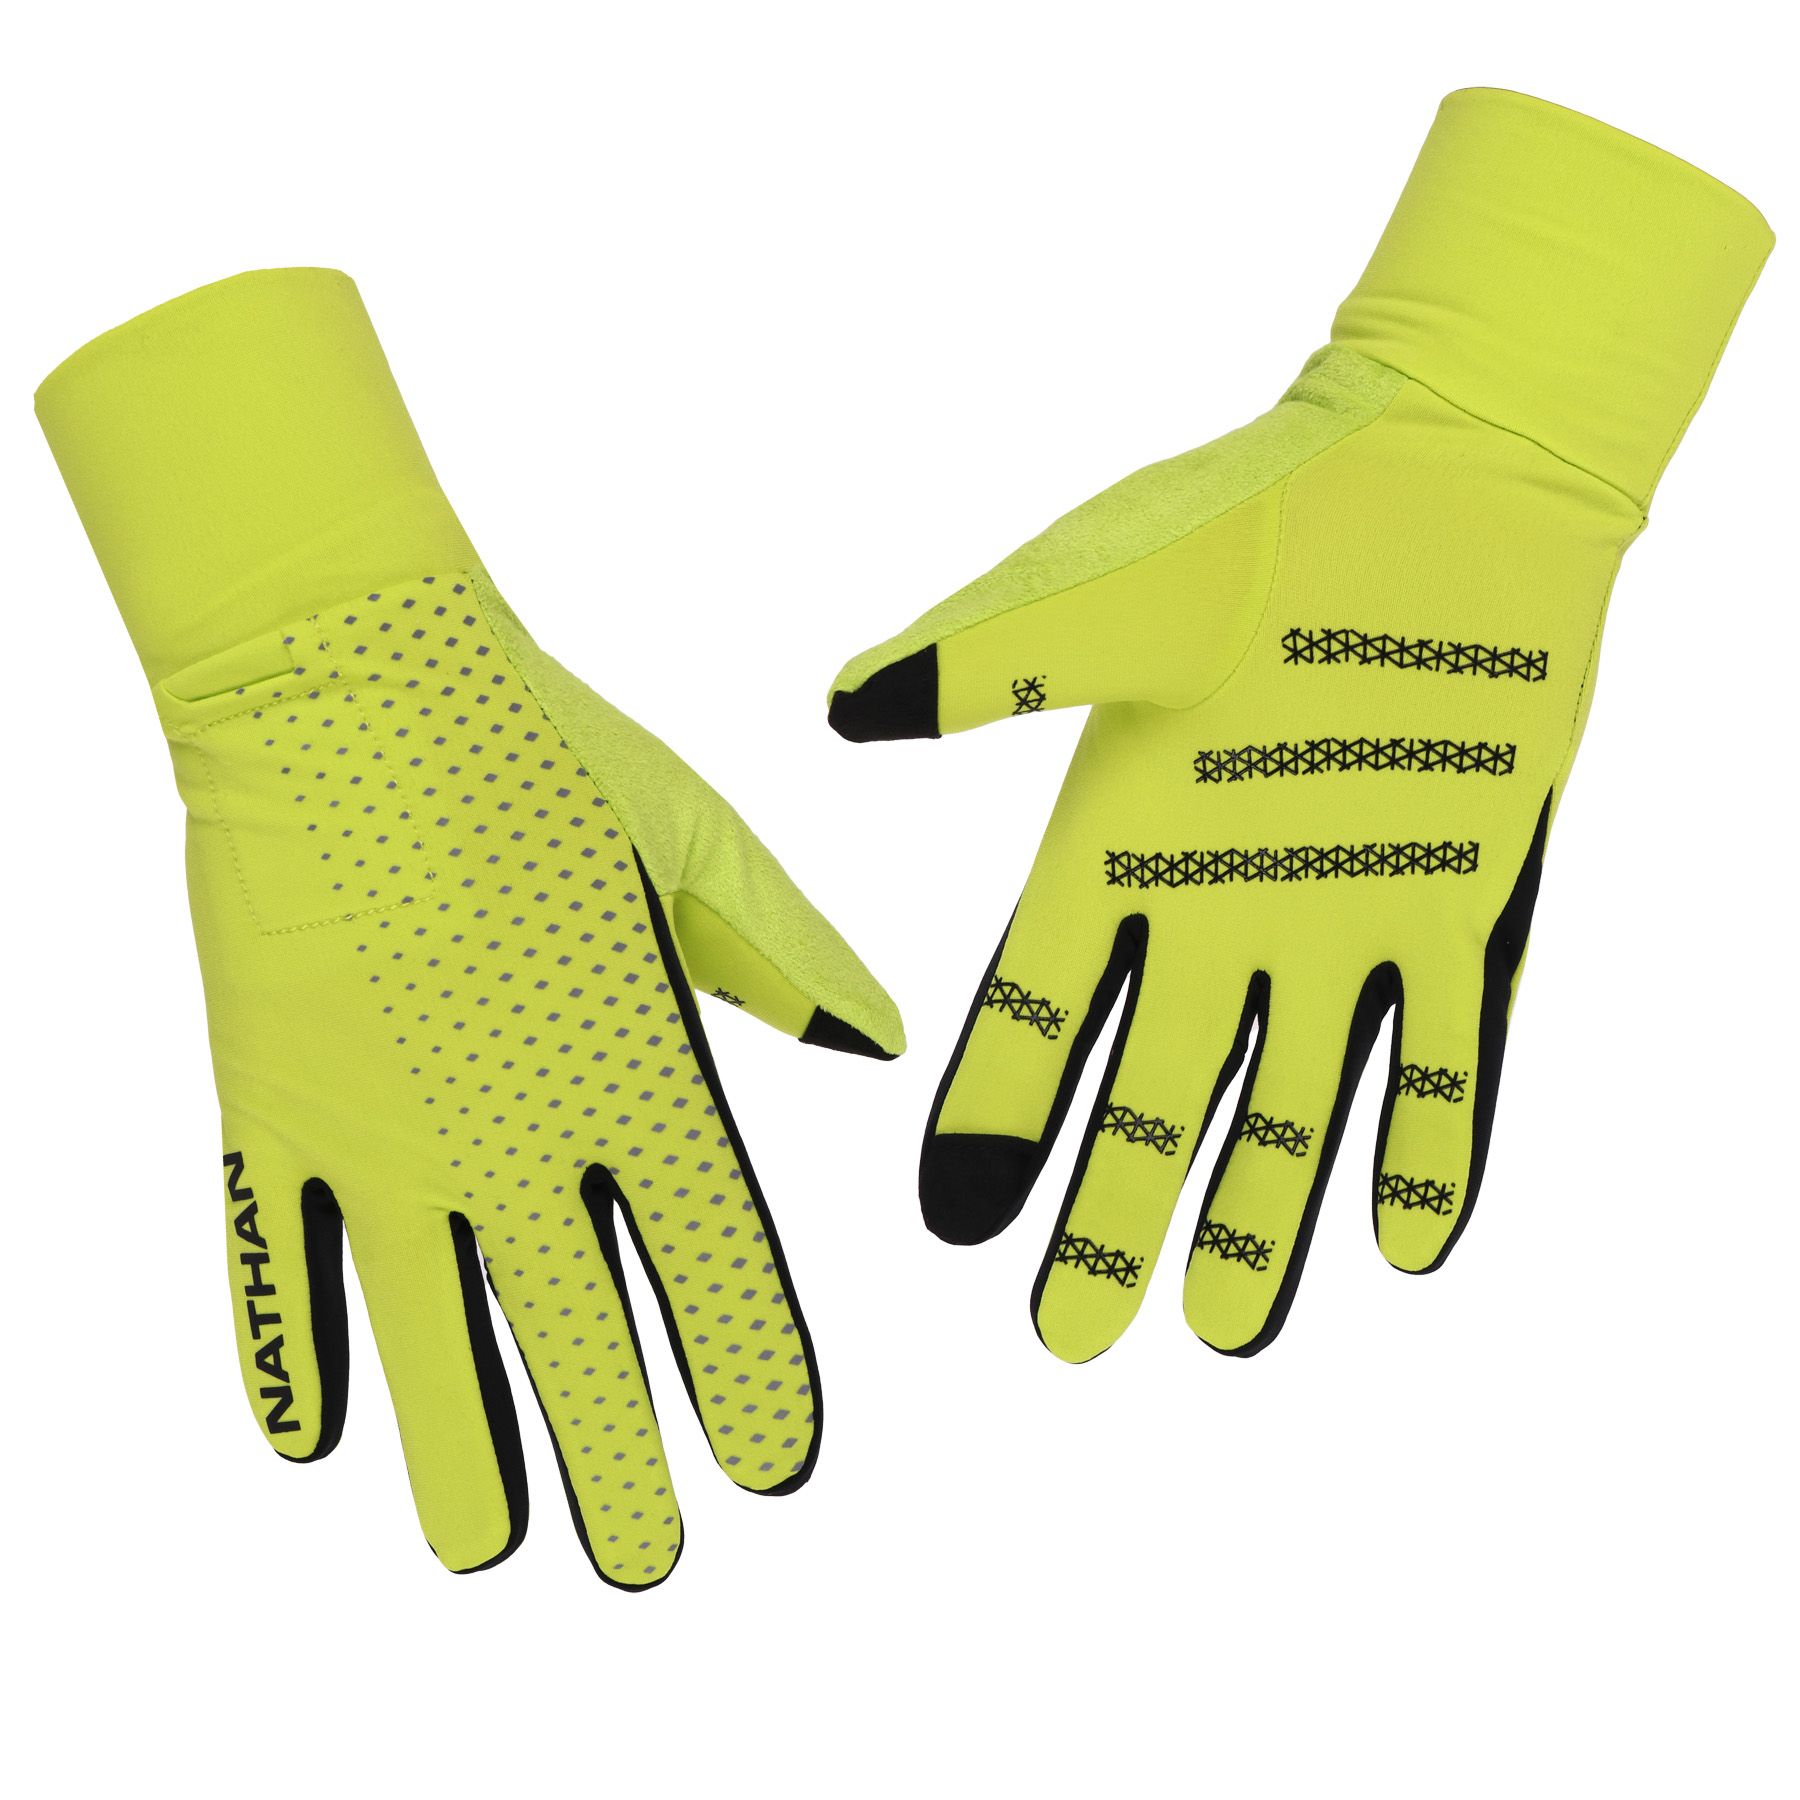 Produktbild von Nathan Sports Hypernight Reflective Handschuh - Hi Vis Yellow/Geo Print